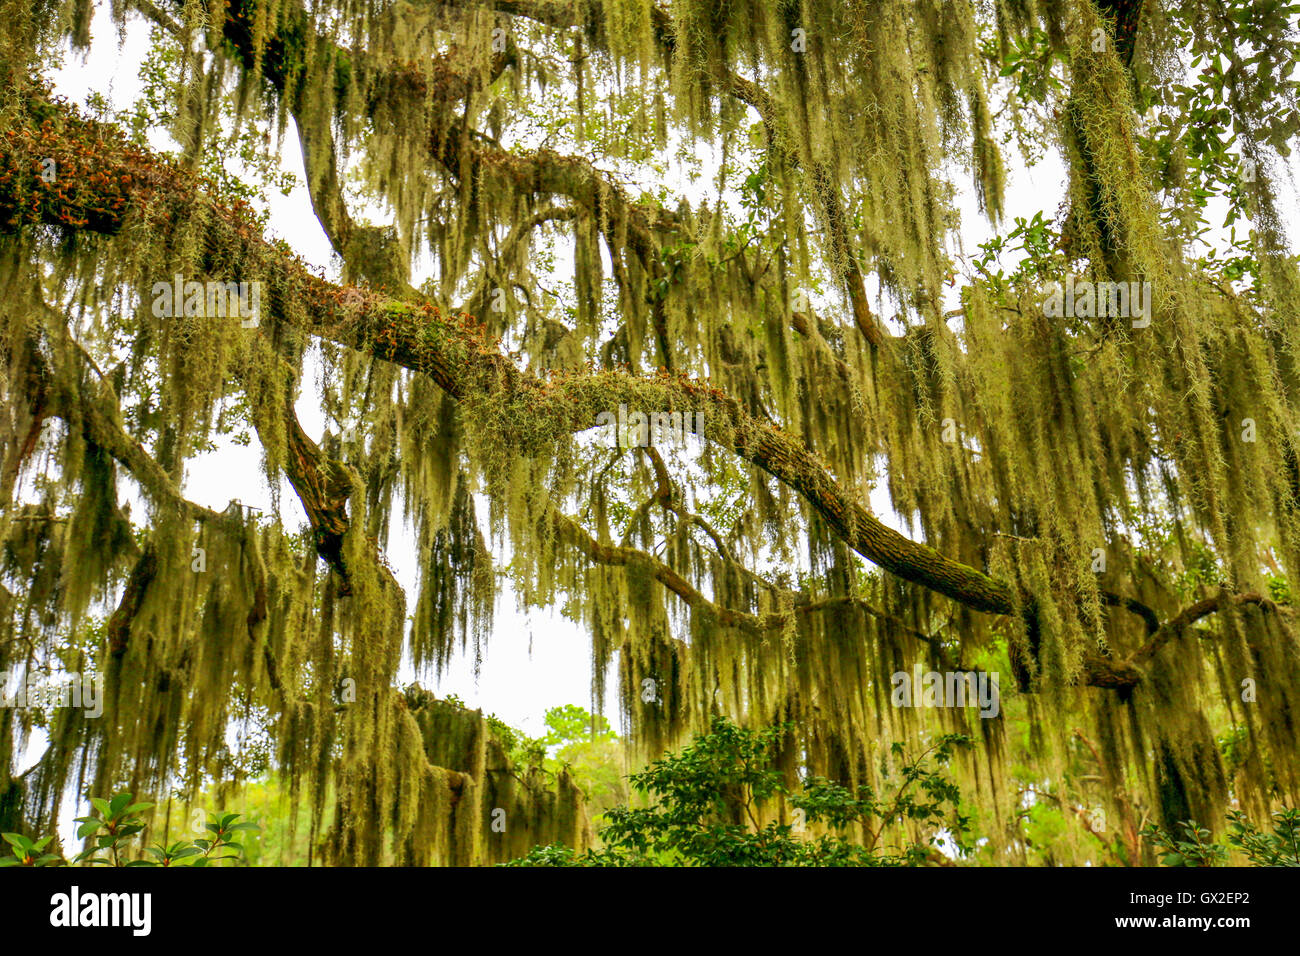 Los árboles colgantes con musgo español en el sur de los Estados Unidos. Foto de stock